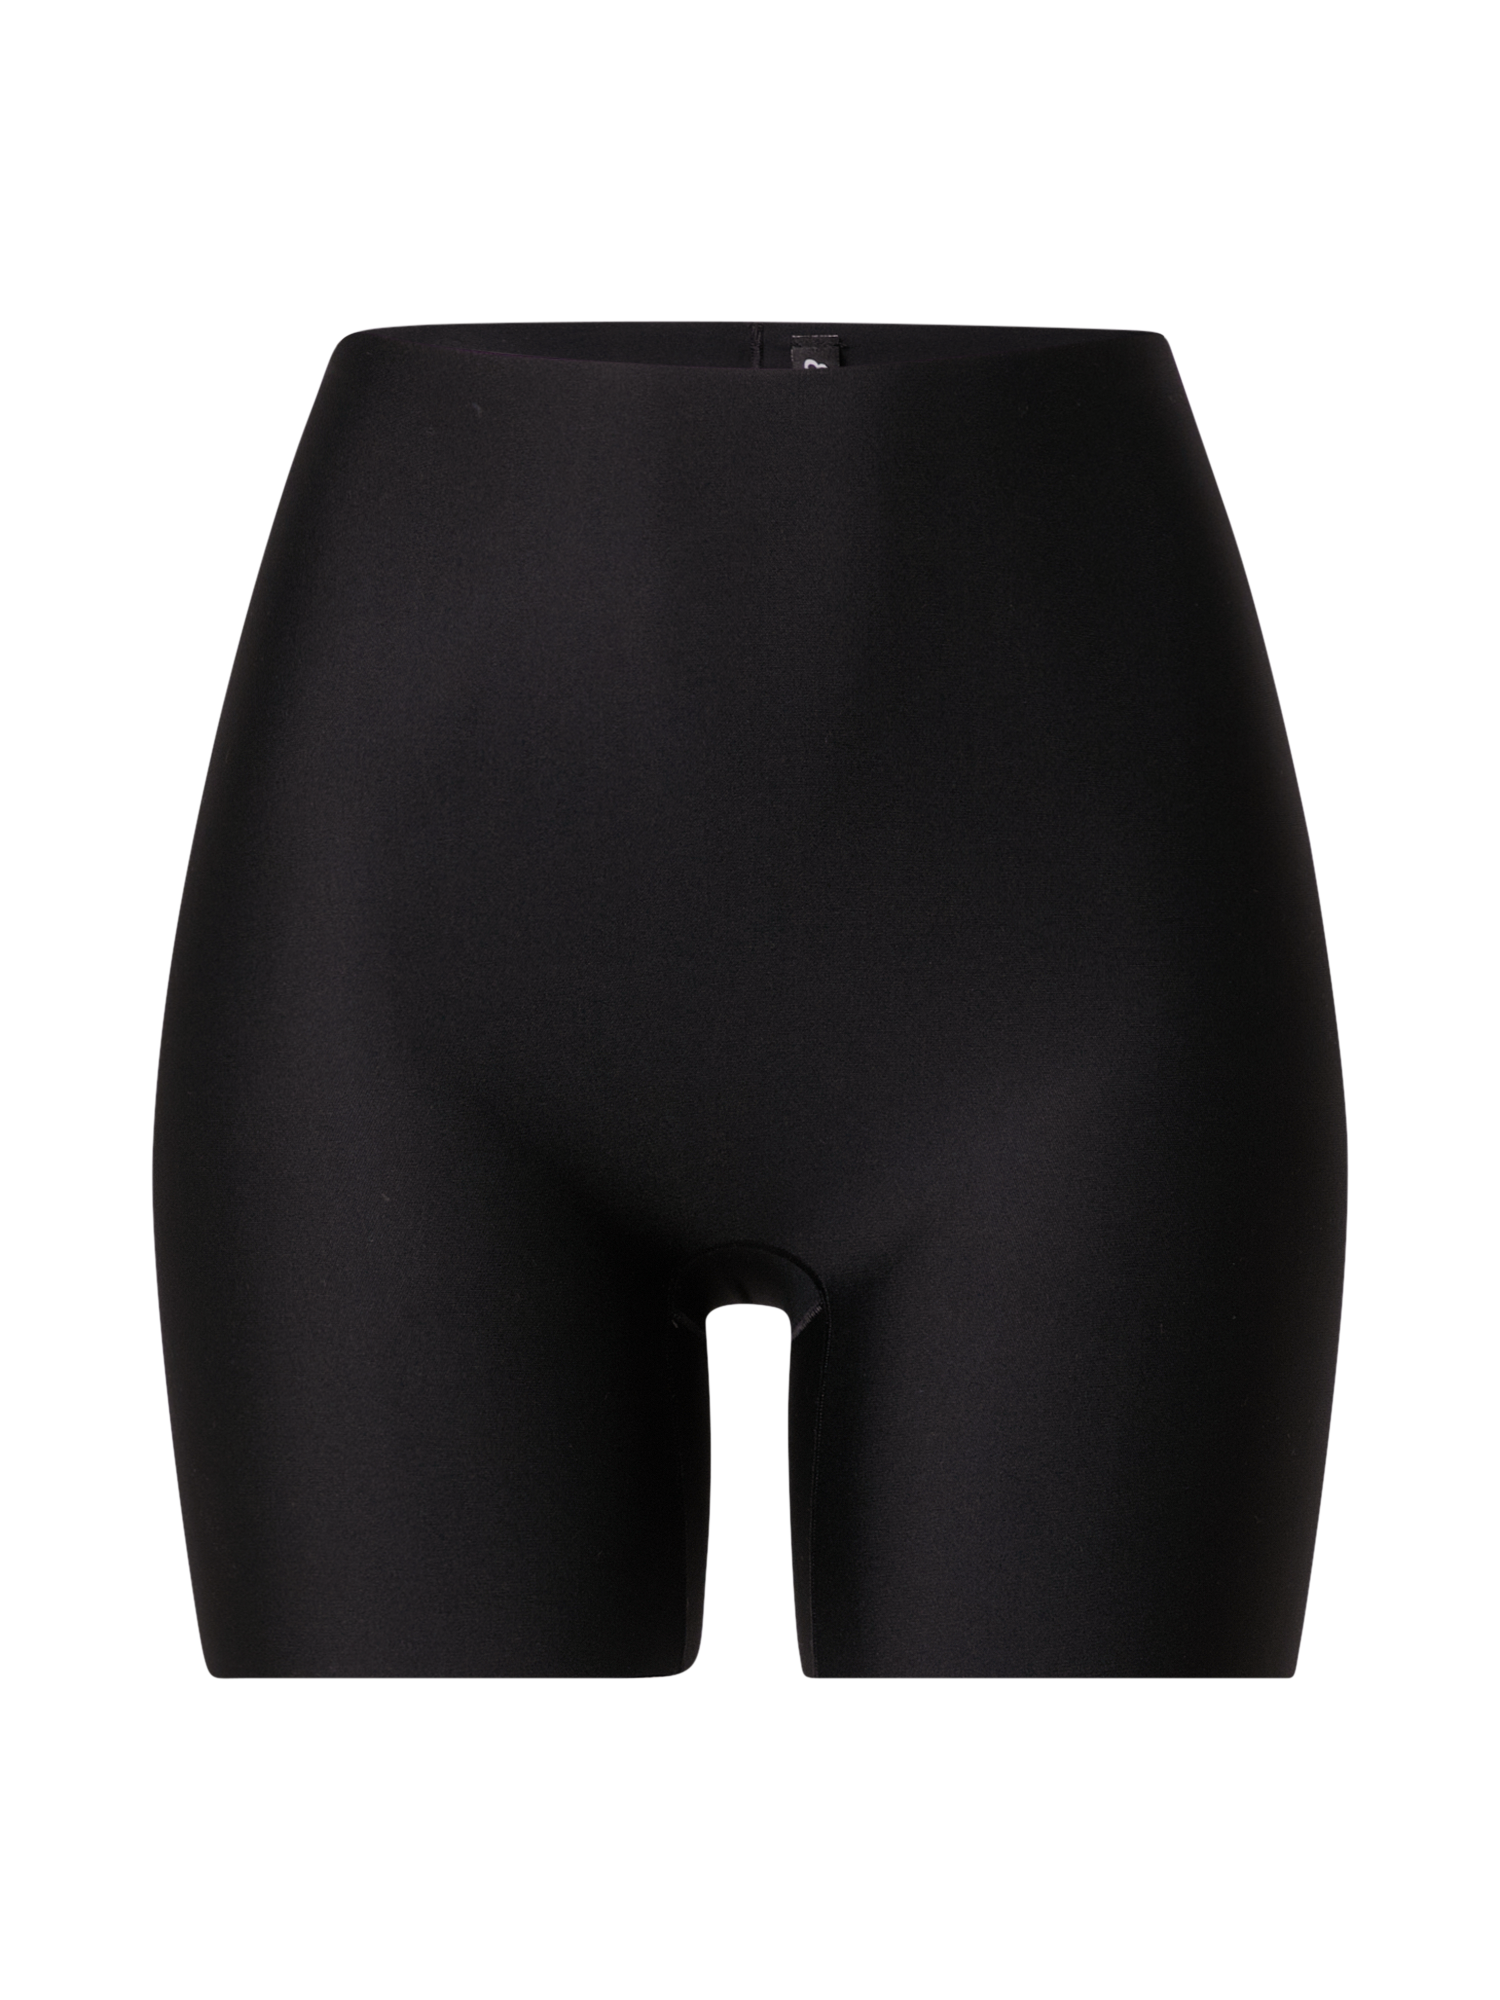 Odzież Specjalne okazje ETAM Spodnie modelujące w kolorze Czarnym 